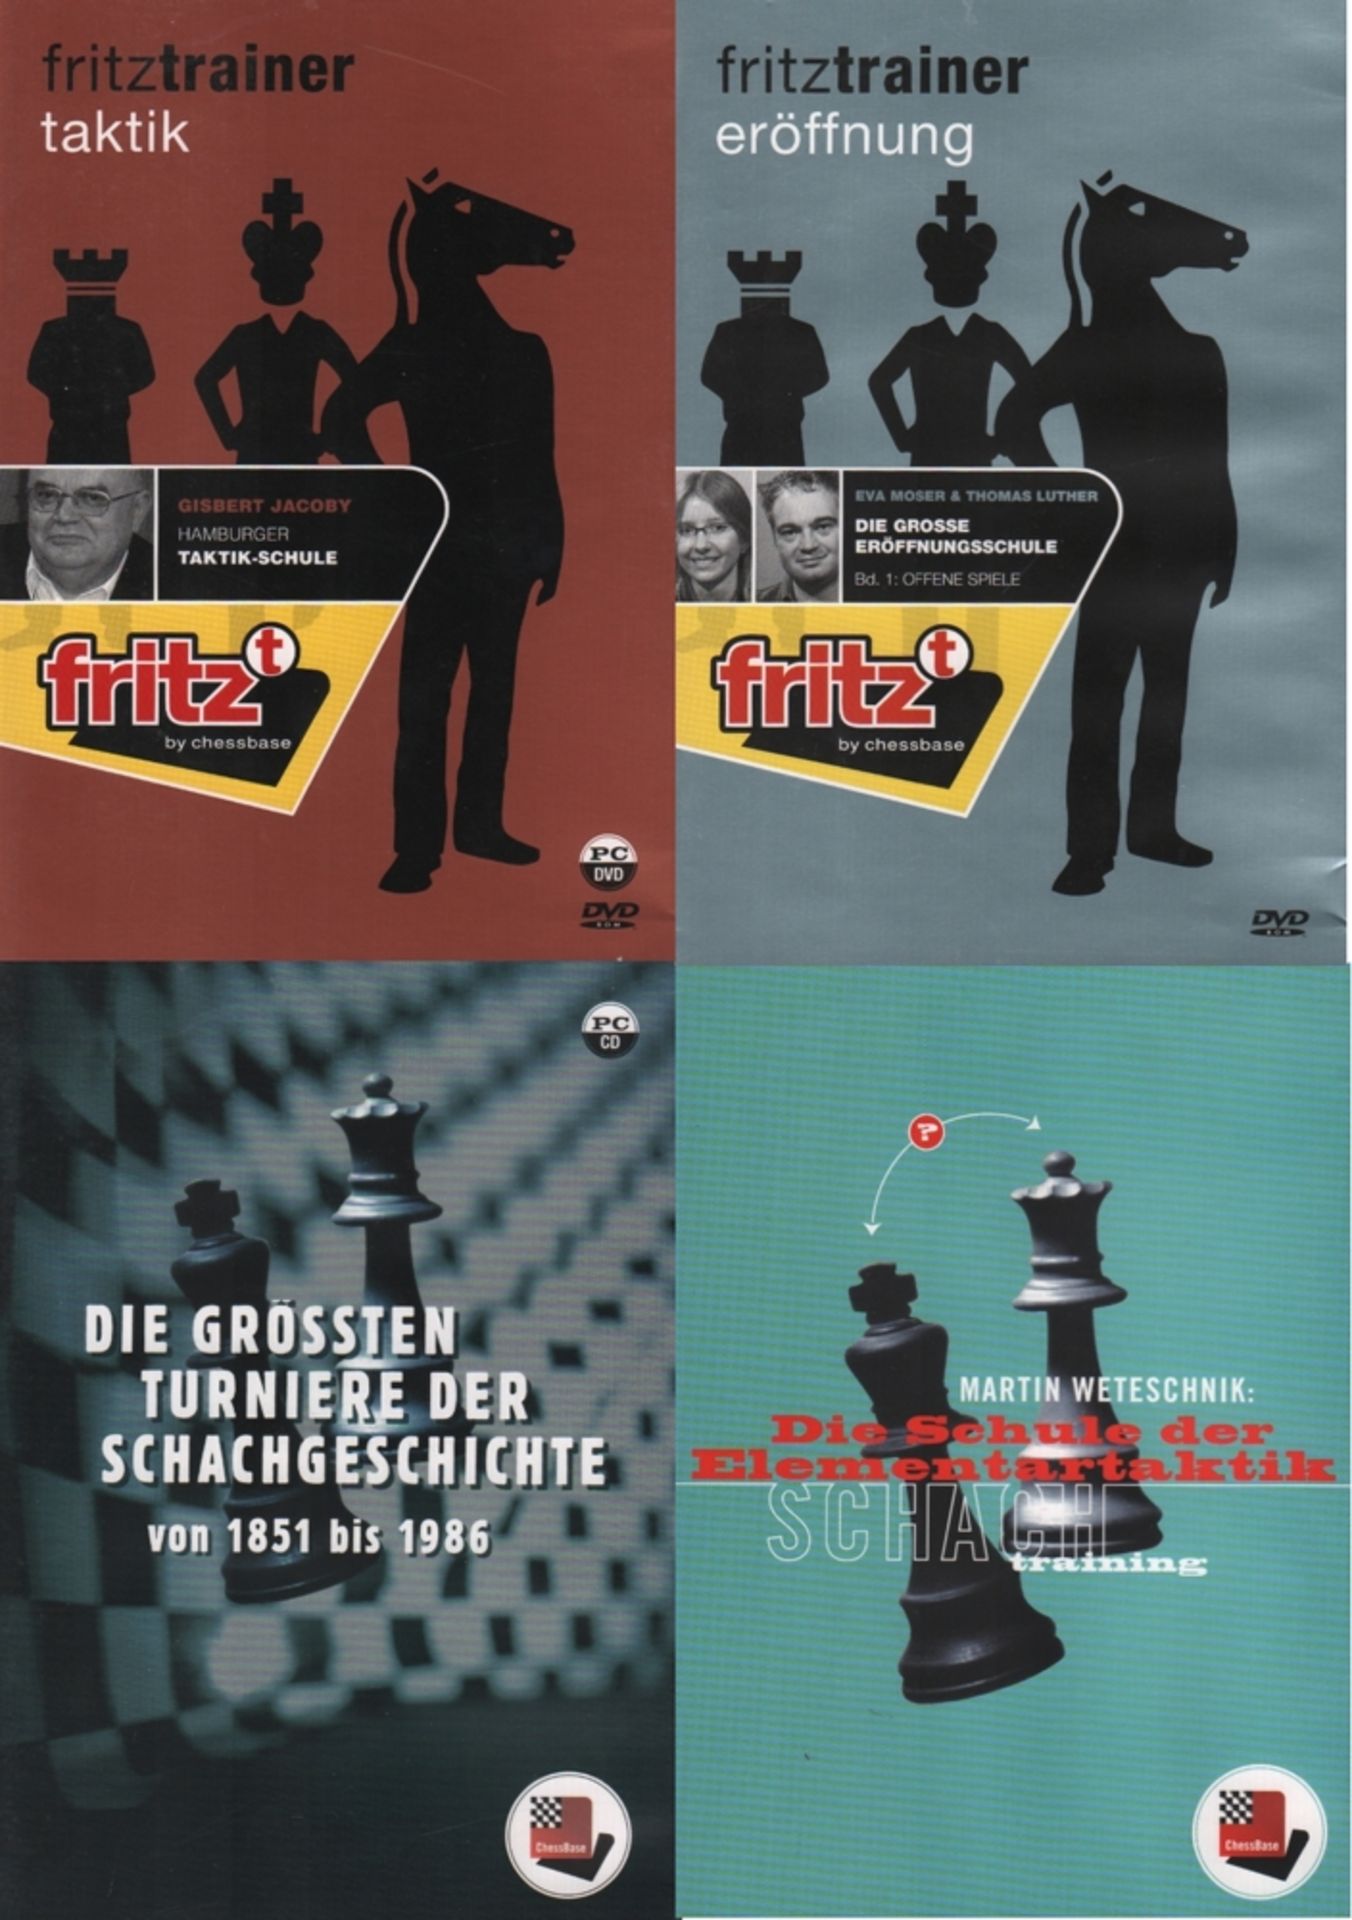 CD.ChessBase. Konvolut von 4 CD’s und 2 DVD’s von ChessBase. Hamburg, ChessBase, ca. 2001 - 2005. In